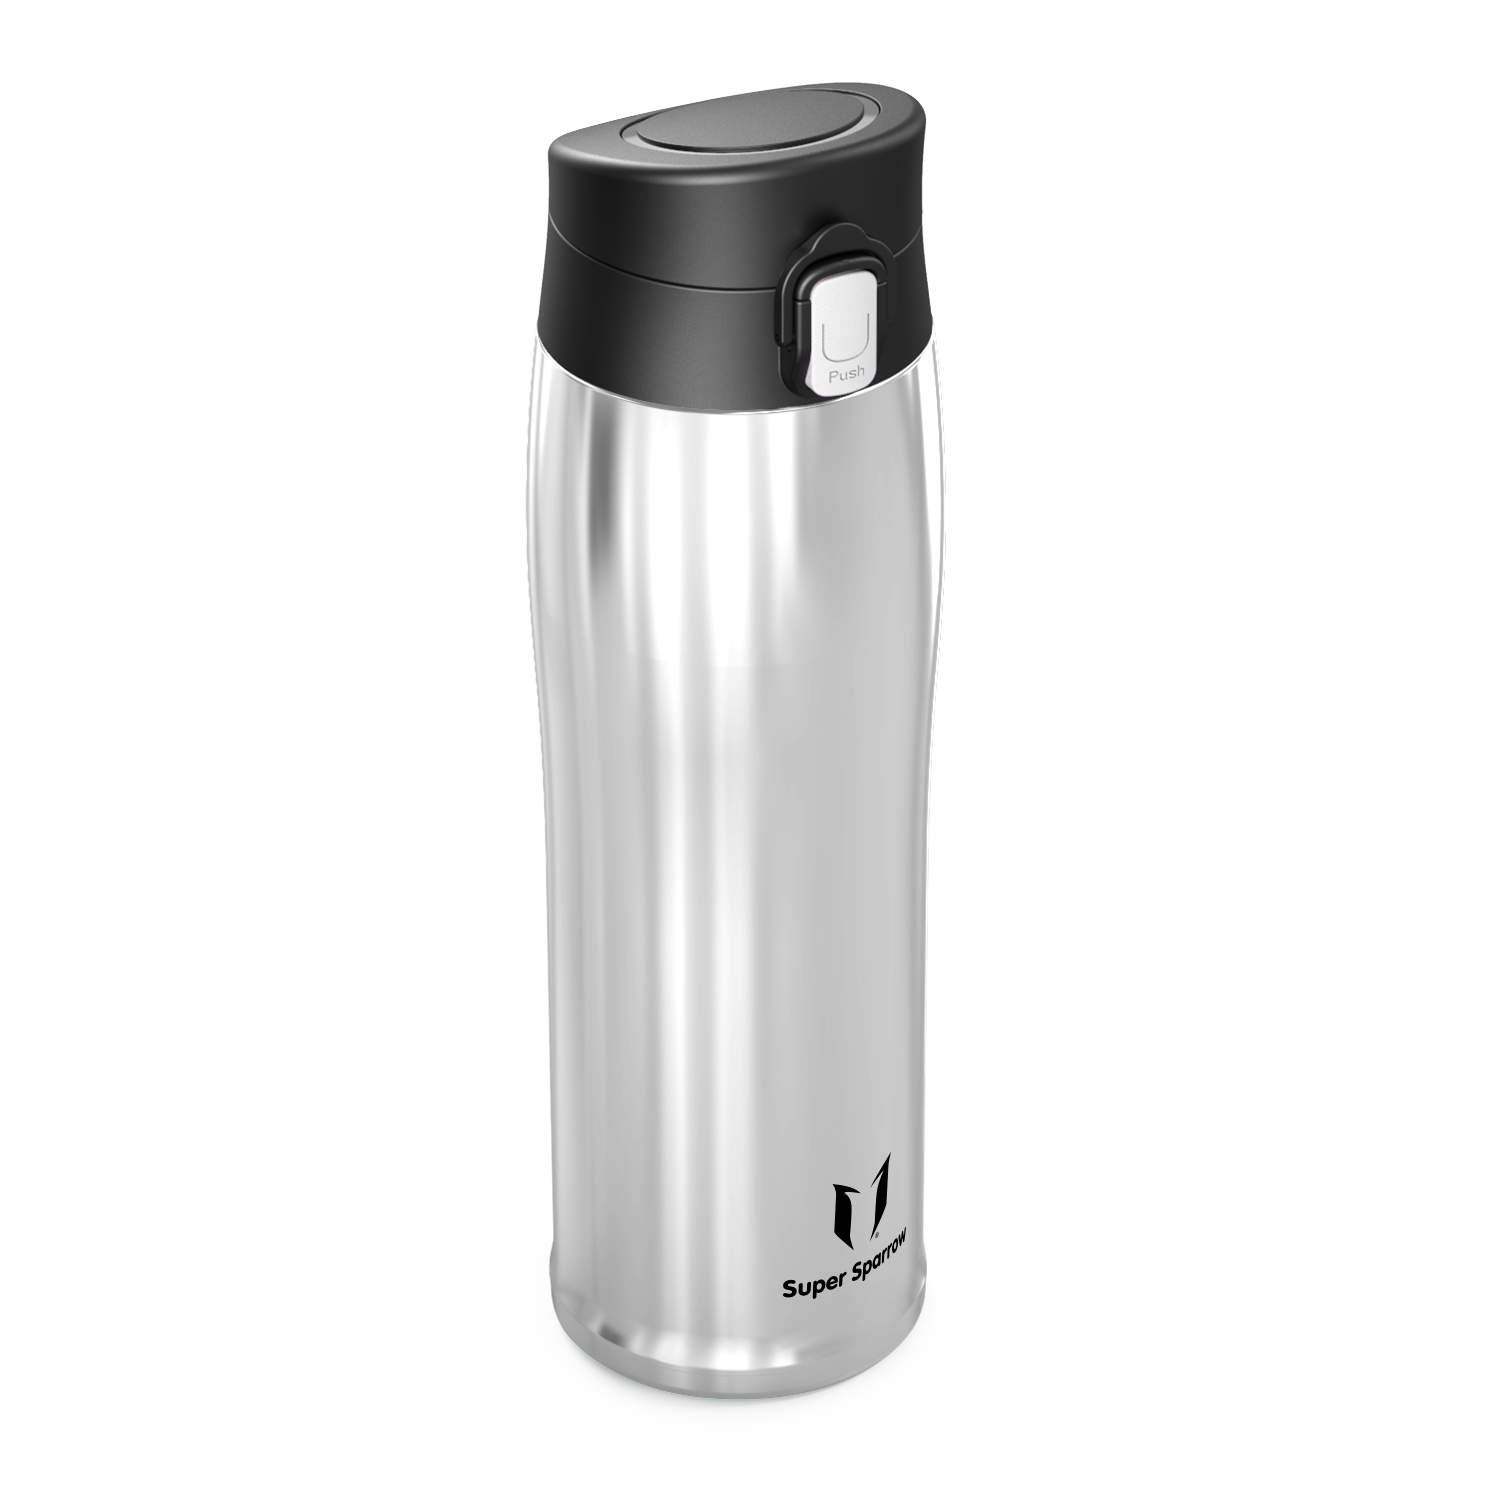 Super Sparrow Water Bottle Stainless Steel 18/10 - Ultralight Travel Mug - 750ml